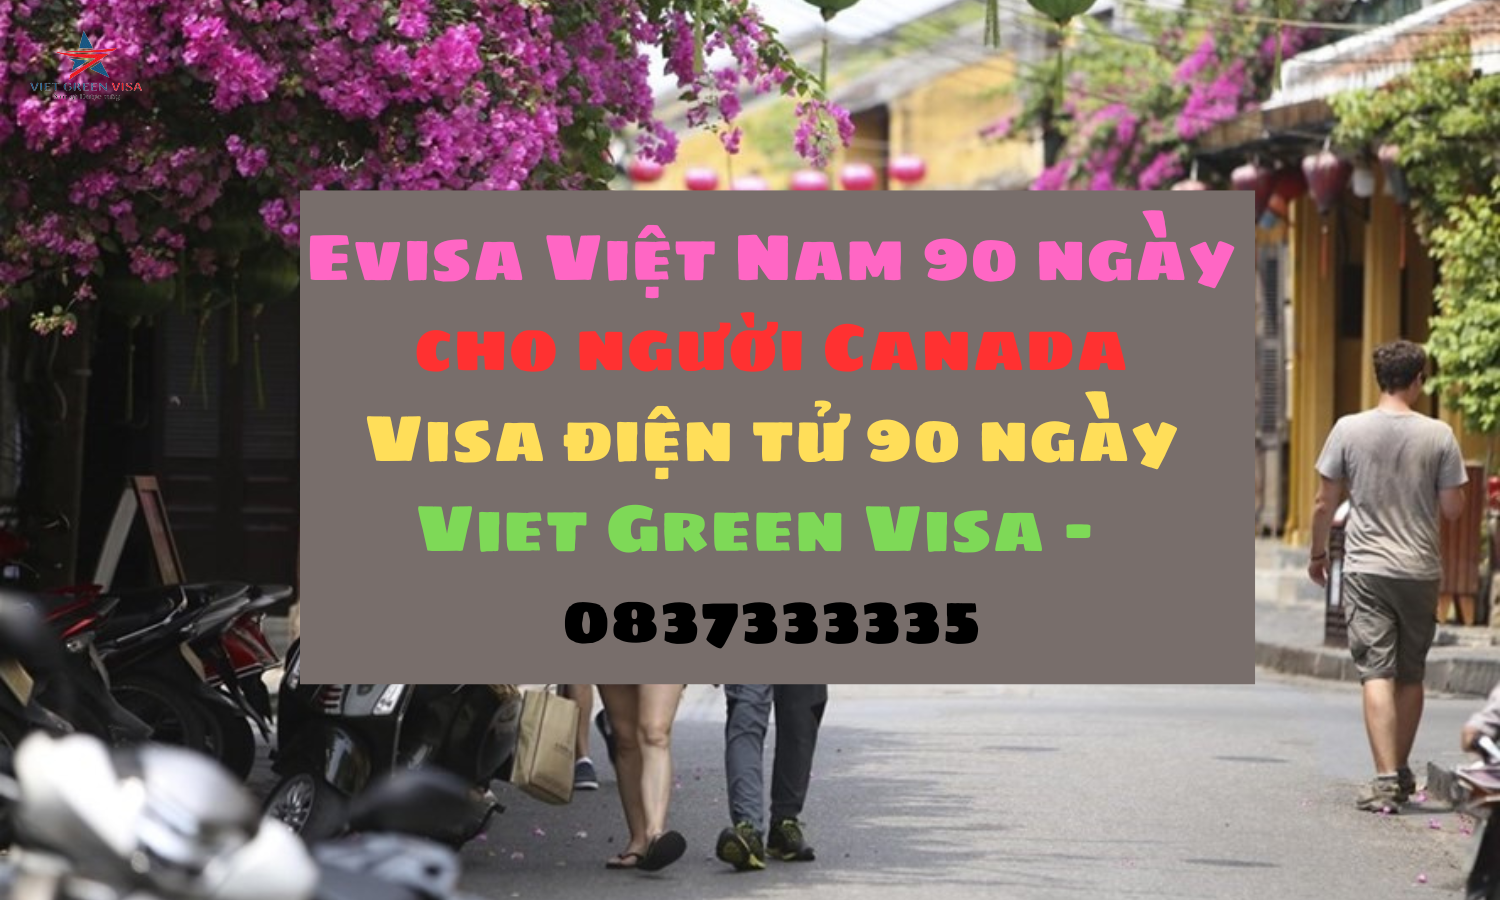 Dịch vụ  xin Evisa Việt Nam 3 tháng cho quốc tịch Canada